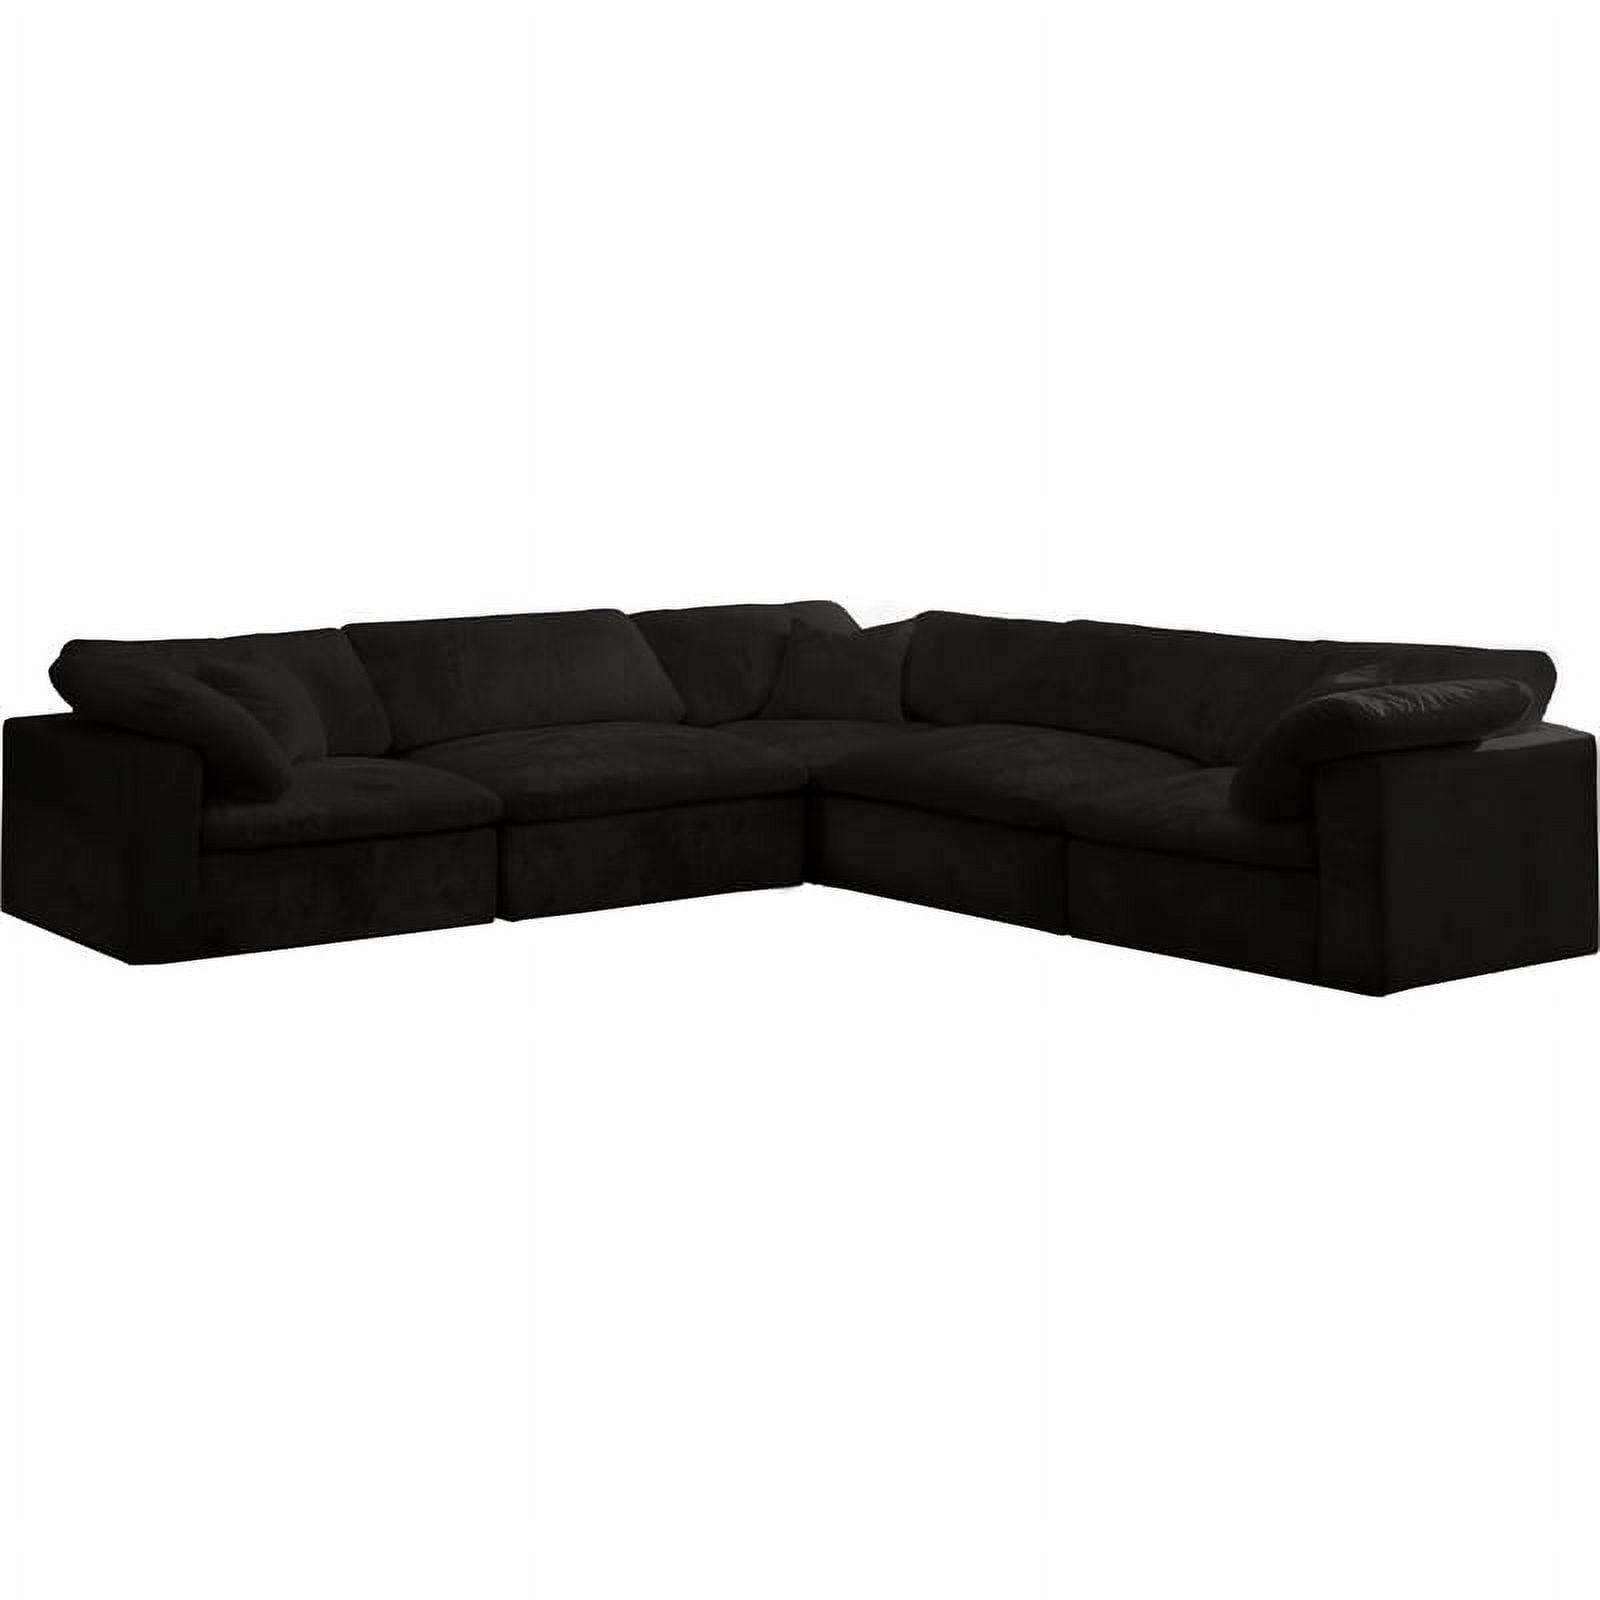 Luxurious Black Velvet & Wood Modular Sectional Sofa, 120"